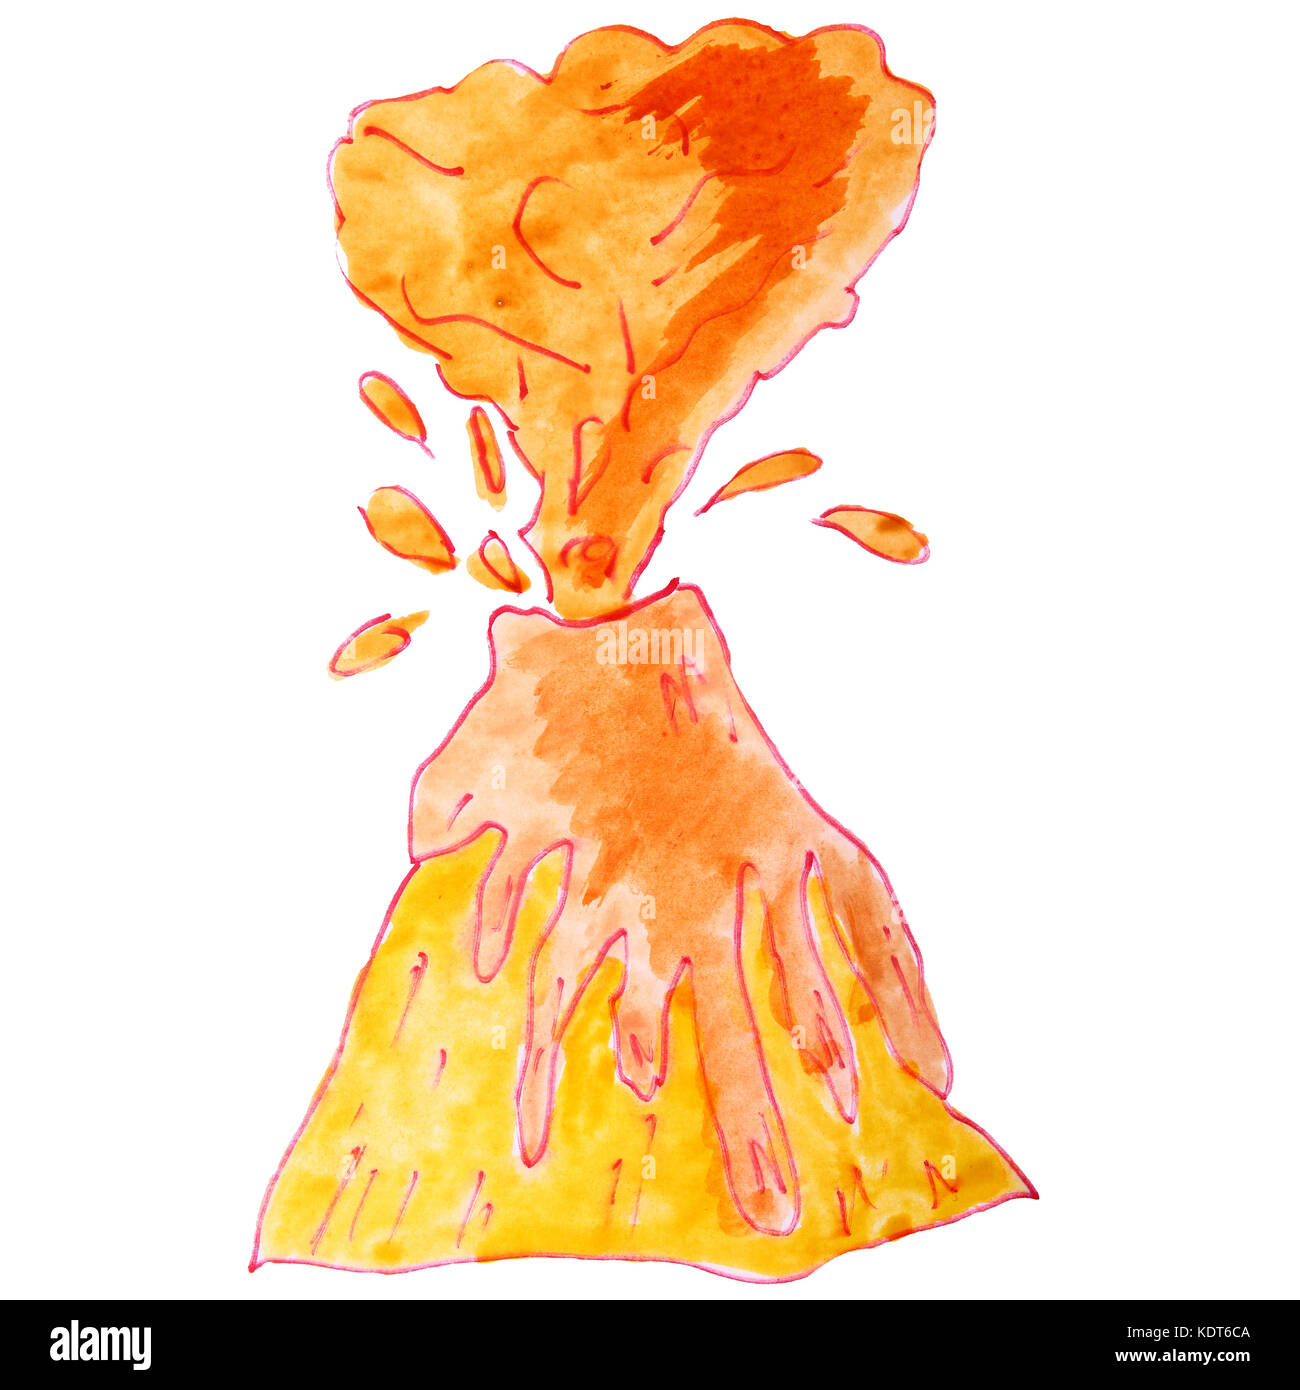 Aquarell Zeichnung ein kinder cartoon Vulkan auf einem weißen backgro Stockfoto